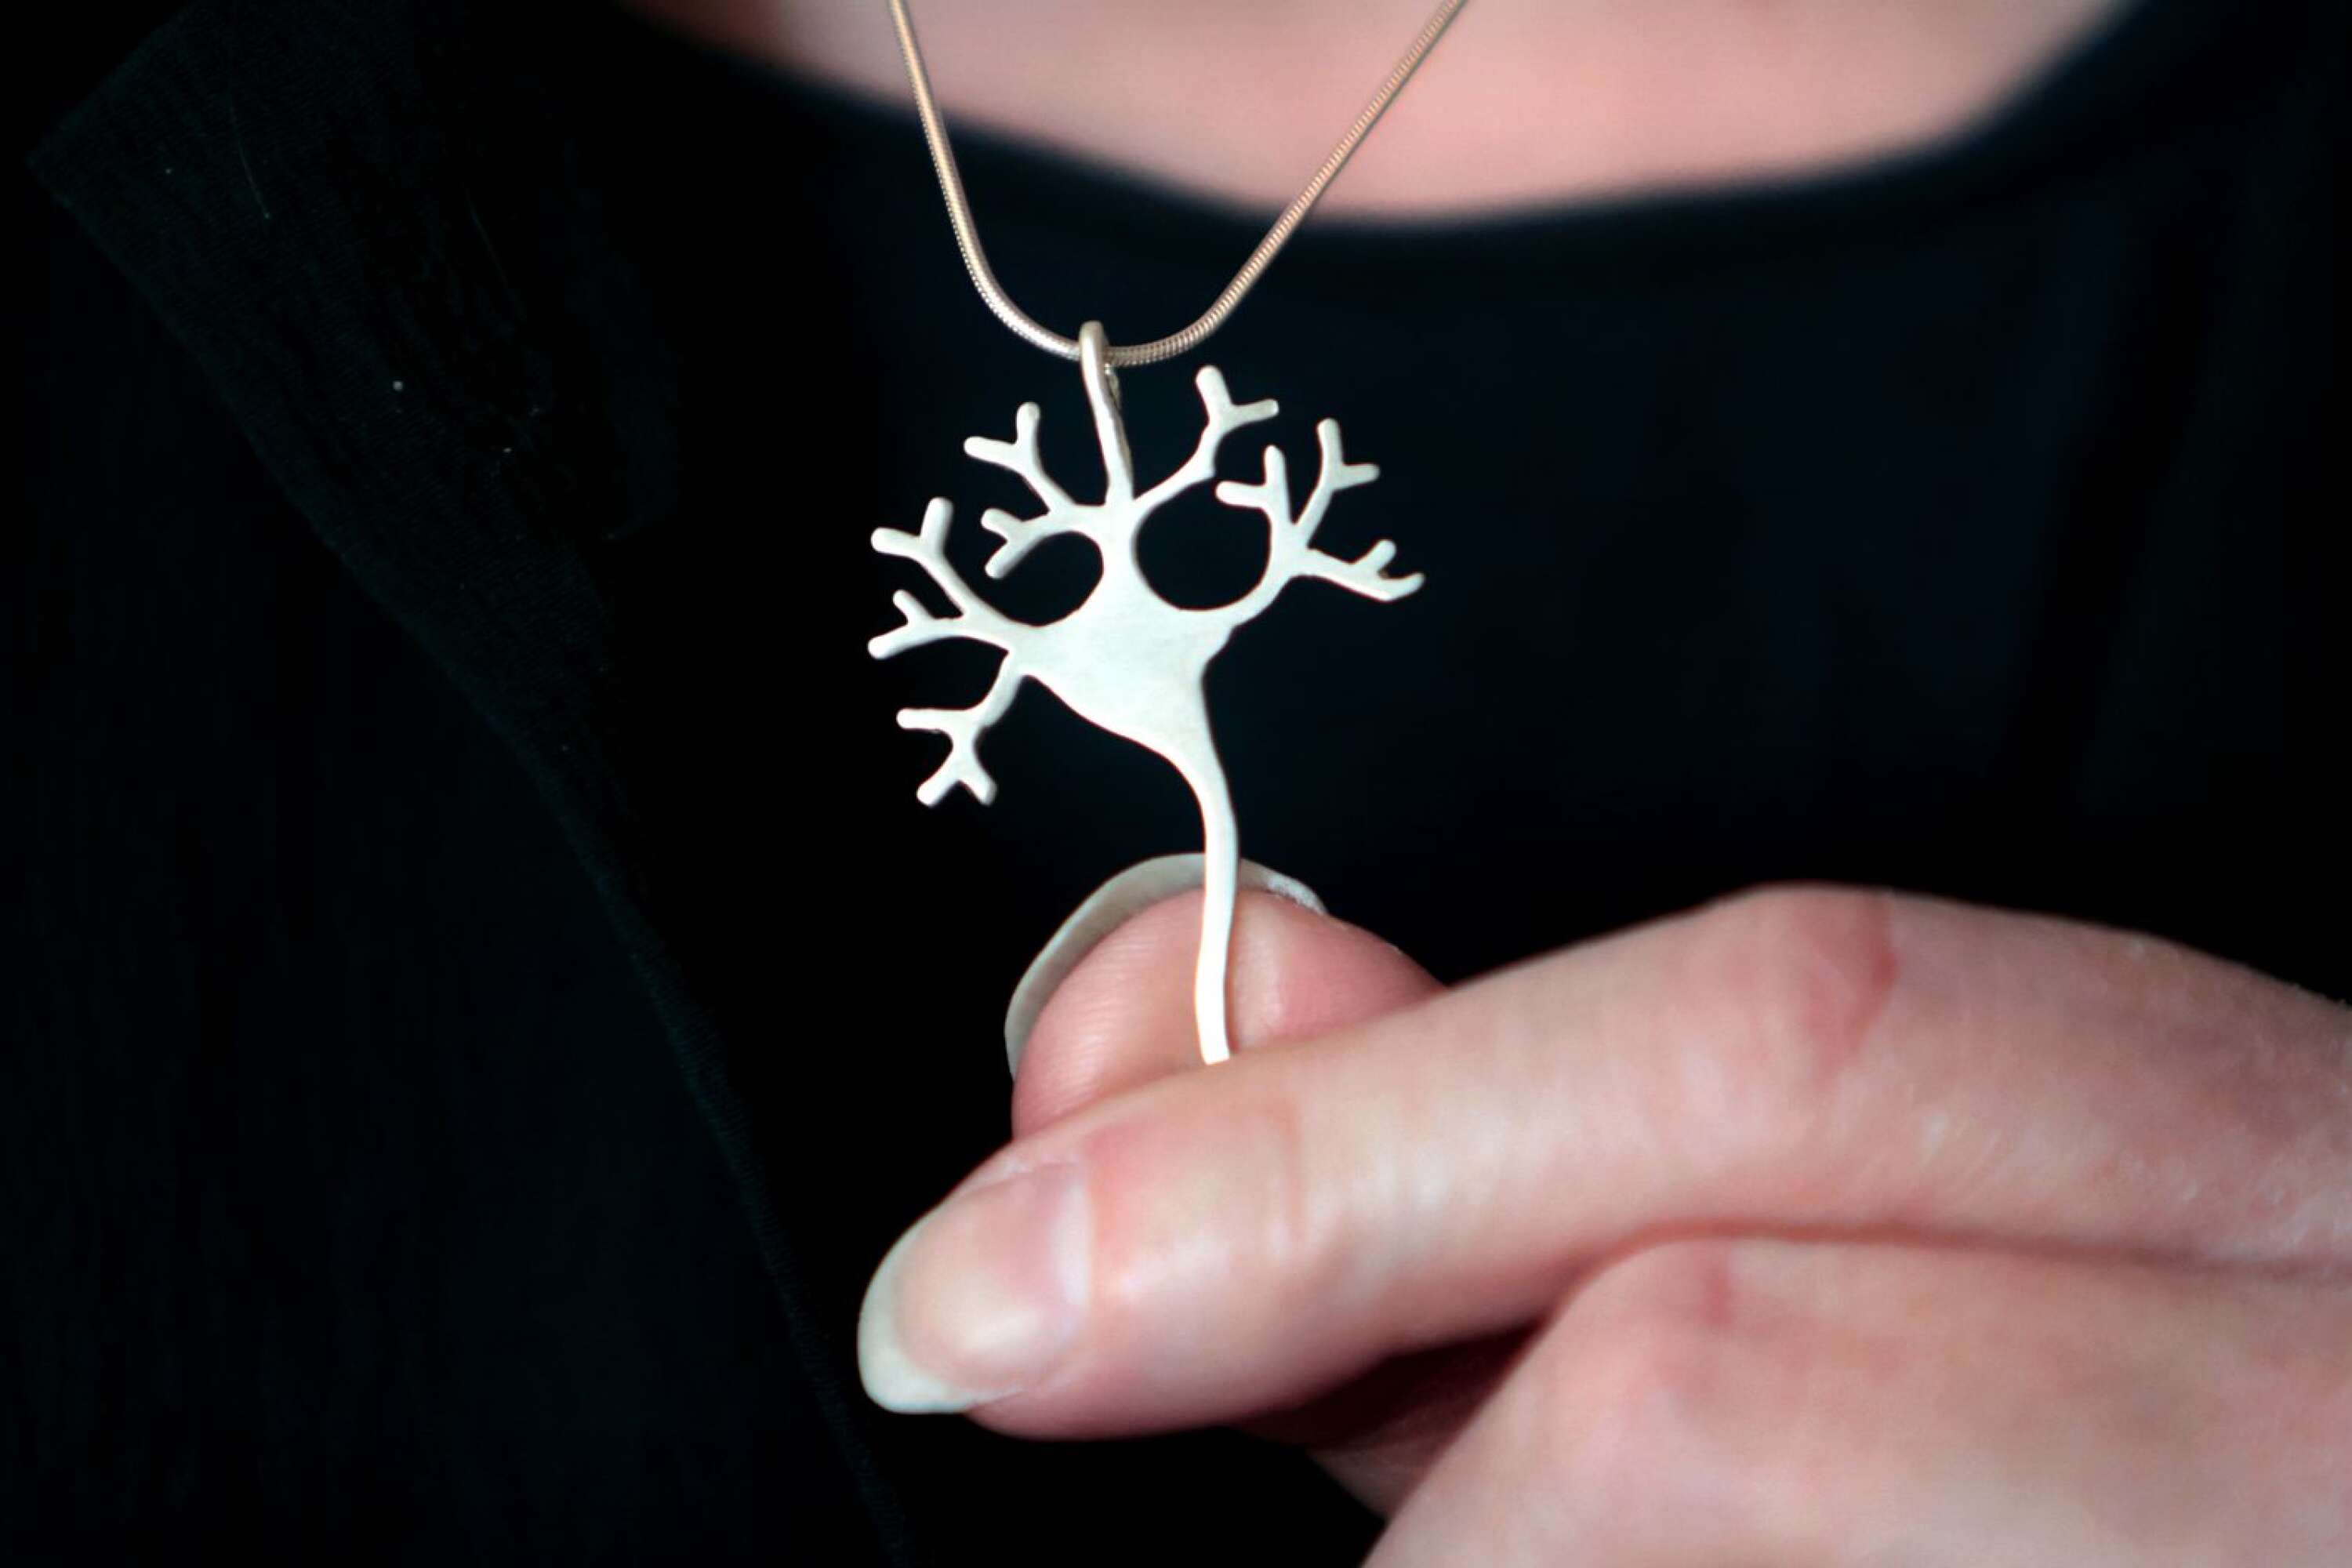 Neuroner eller nervceller har spelat en viktig roll i Anna-Karins återhämtning. ”Så jag ville ha ett neuron som smycke”, säger Anna-Karin. Hon fick ett specialbeställt hos silversmeden Jenny Risfelt.